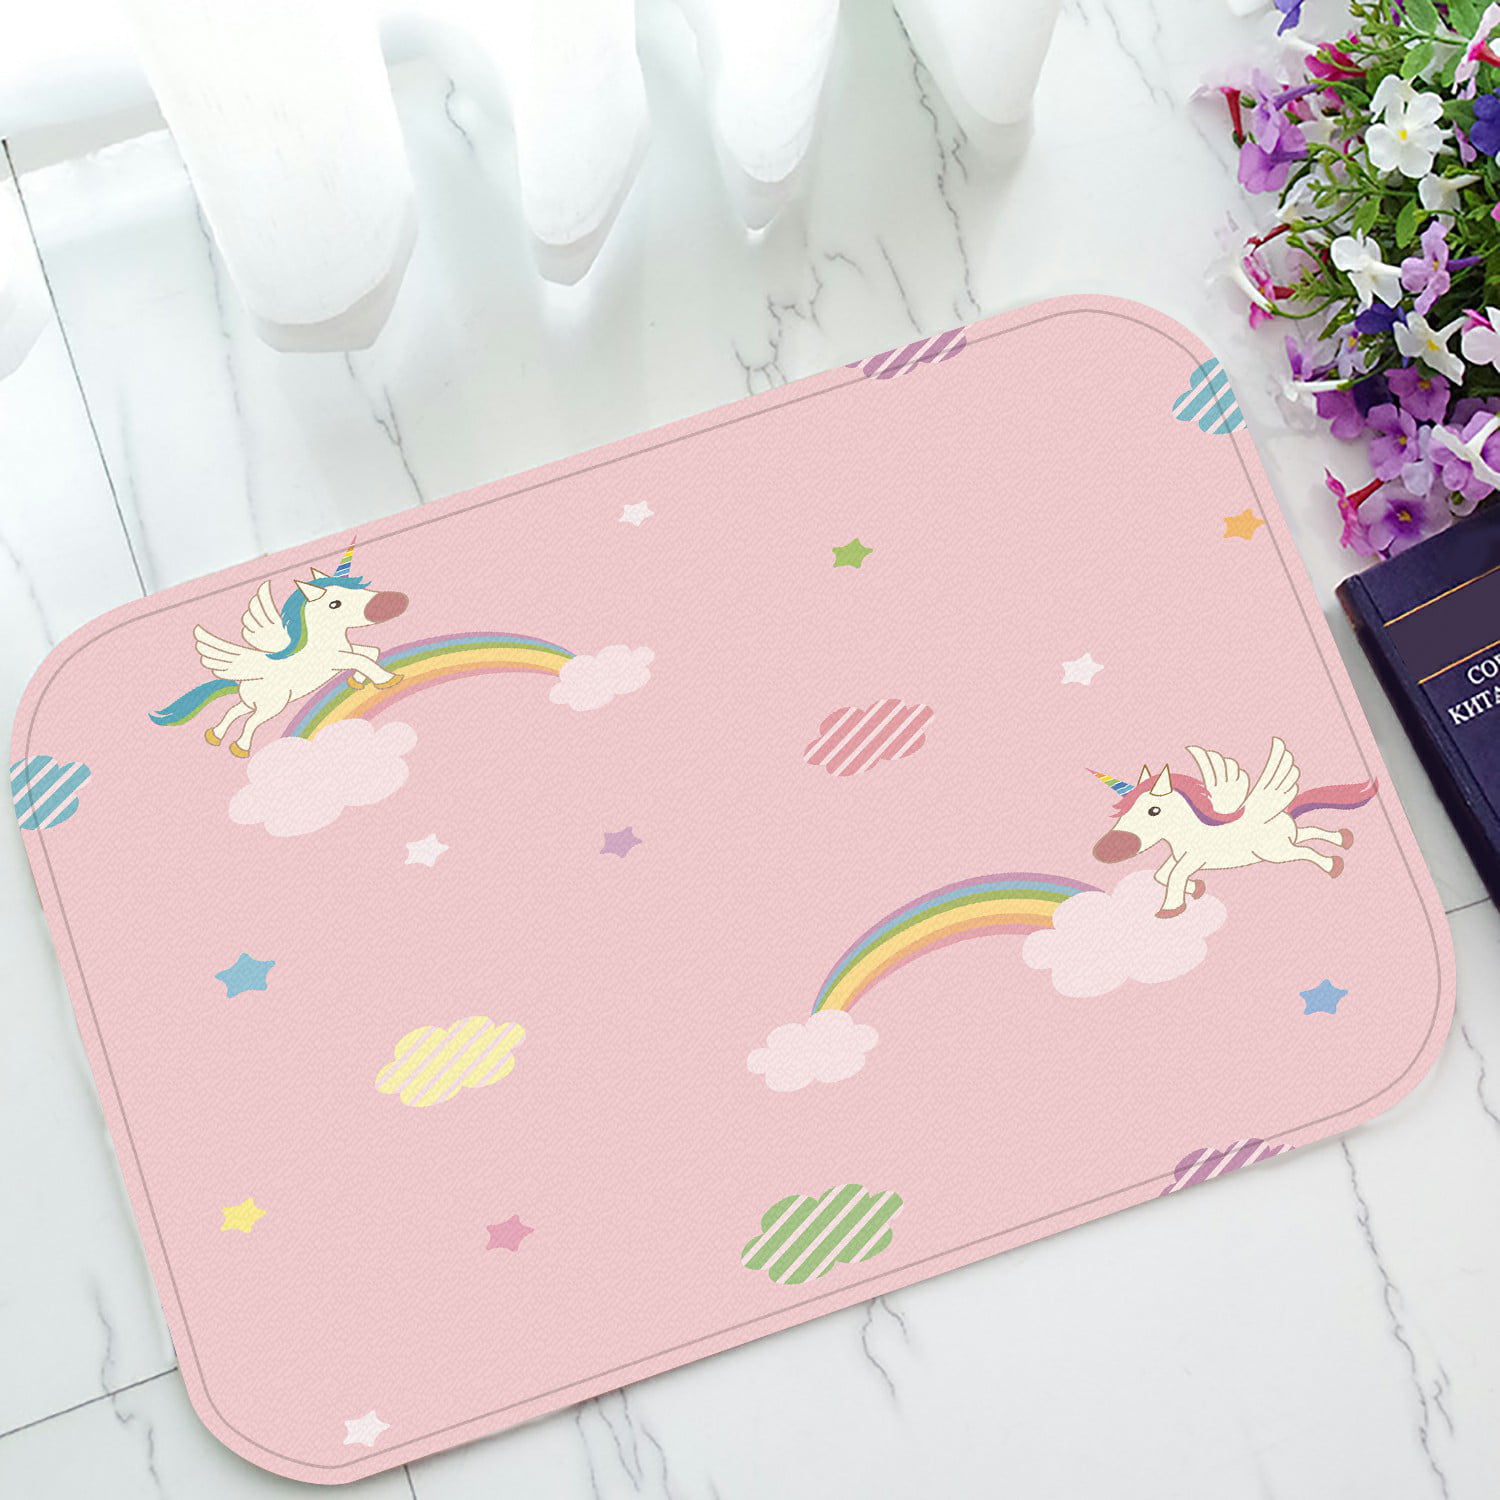 Magical Space Unicorn Pink Indoor Outdoor Rug Welcome Floor Mat Non-Slip Bathmat 